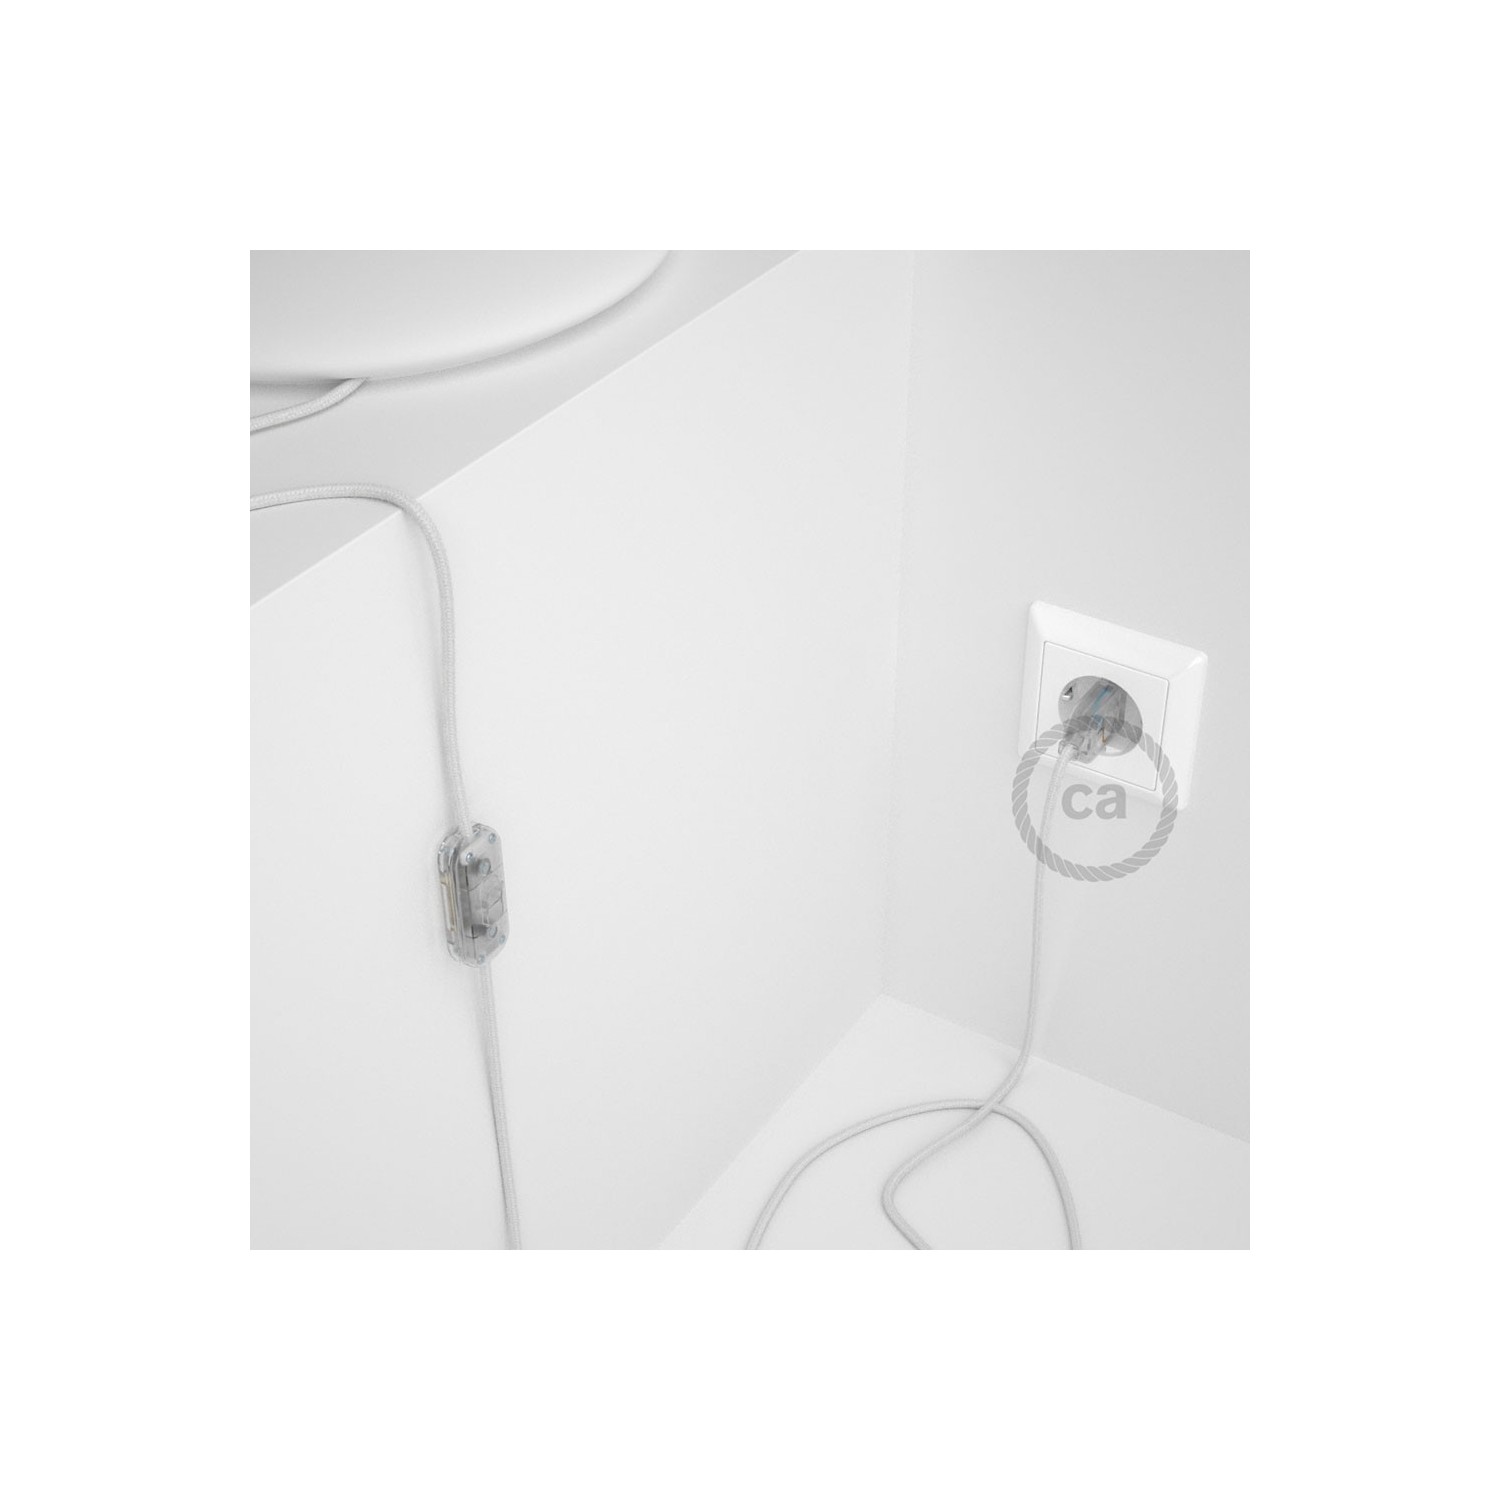 Cablaggio per lampada, cavo RC01 Cotone Bianco 1,80 m. Scegli il colore dell'interruttore e della spina.